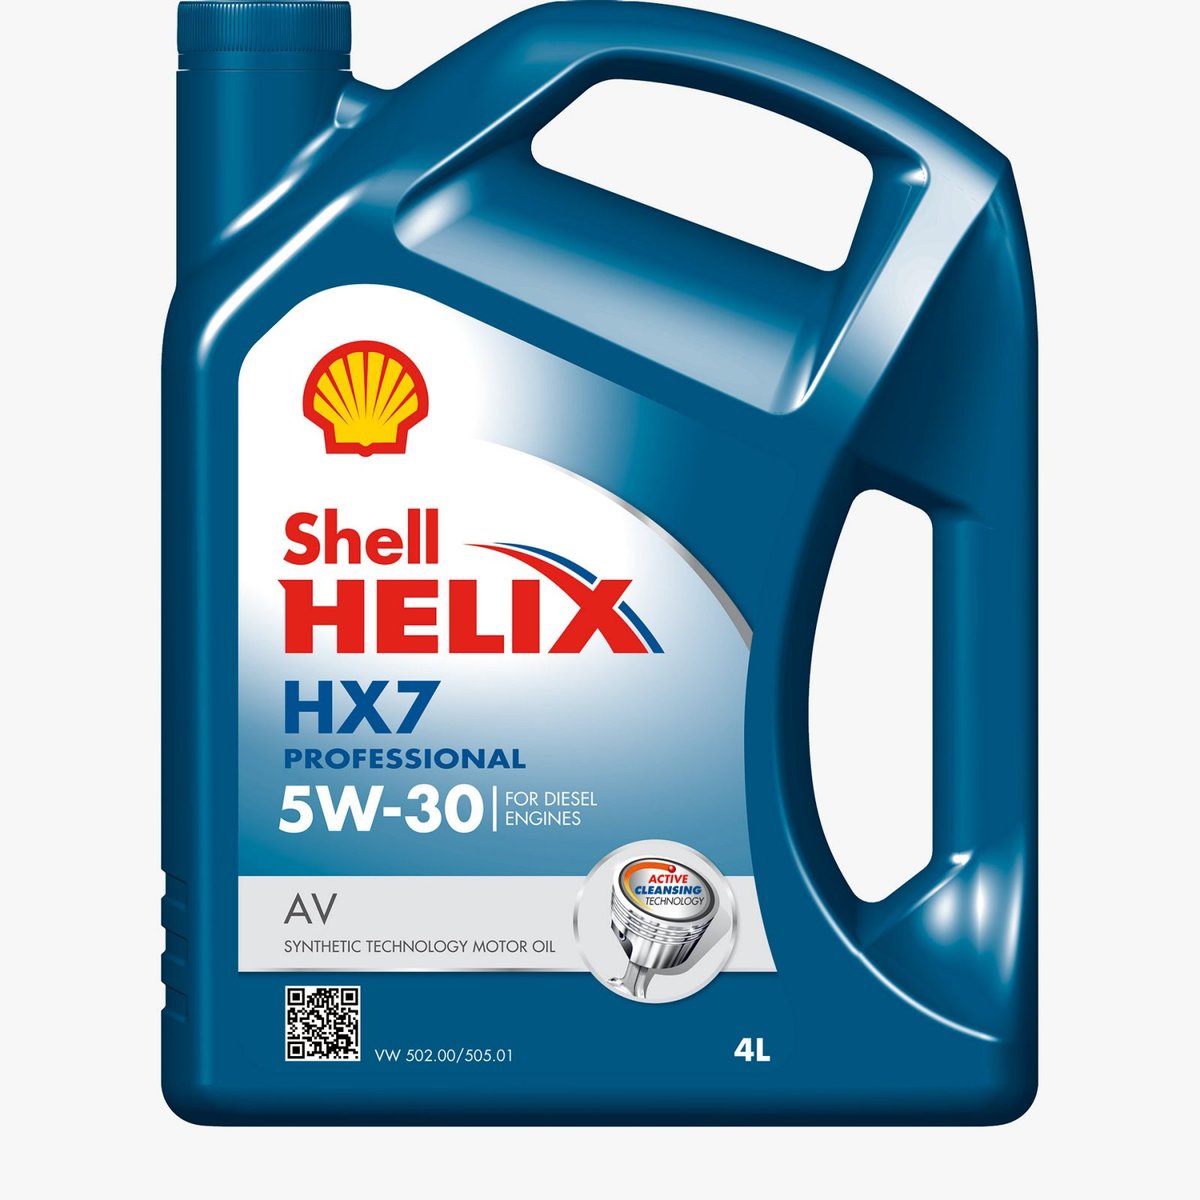 Shell Helix HX7 Pro AV 5W-30 4L